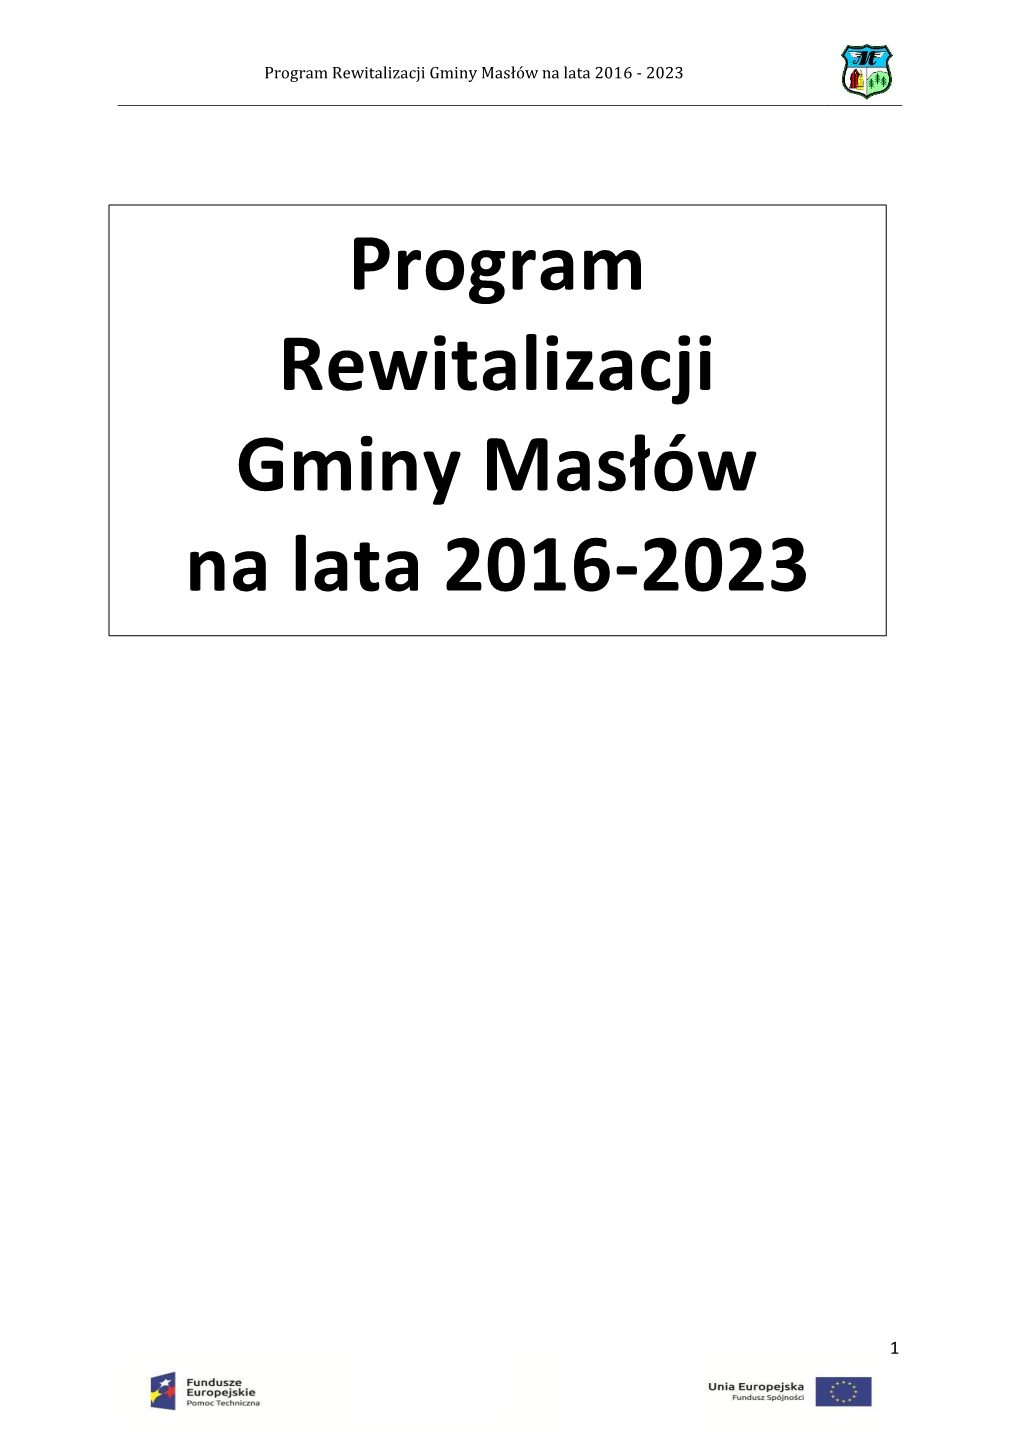 Program Rewitalizacji Gminy Masłów Na Lata 2016-2023